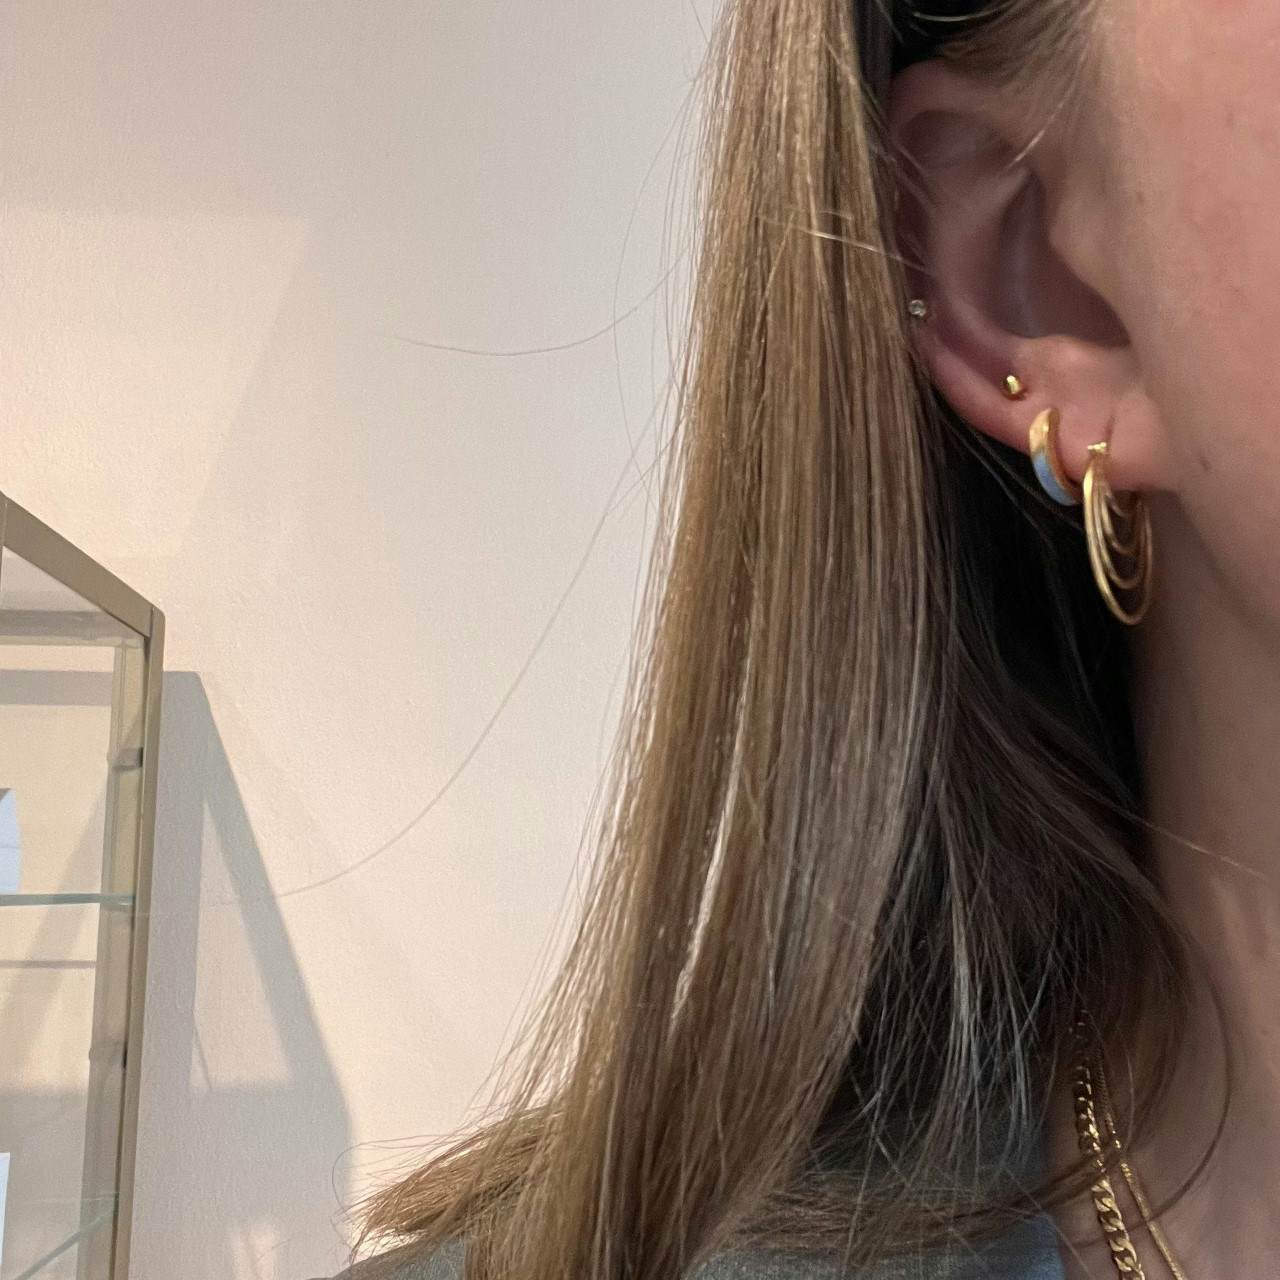 Silhouette Earrings von Pernille Corydon in Silber Sterling 925